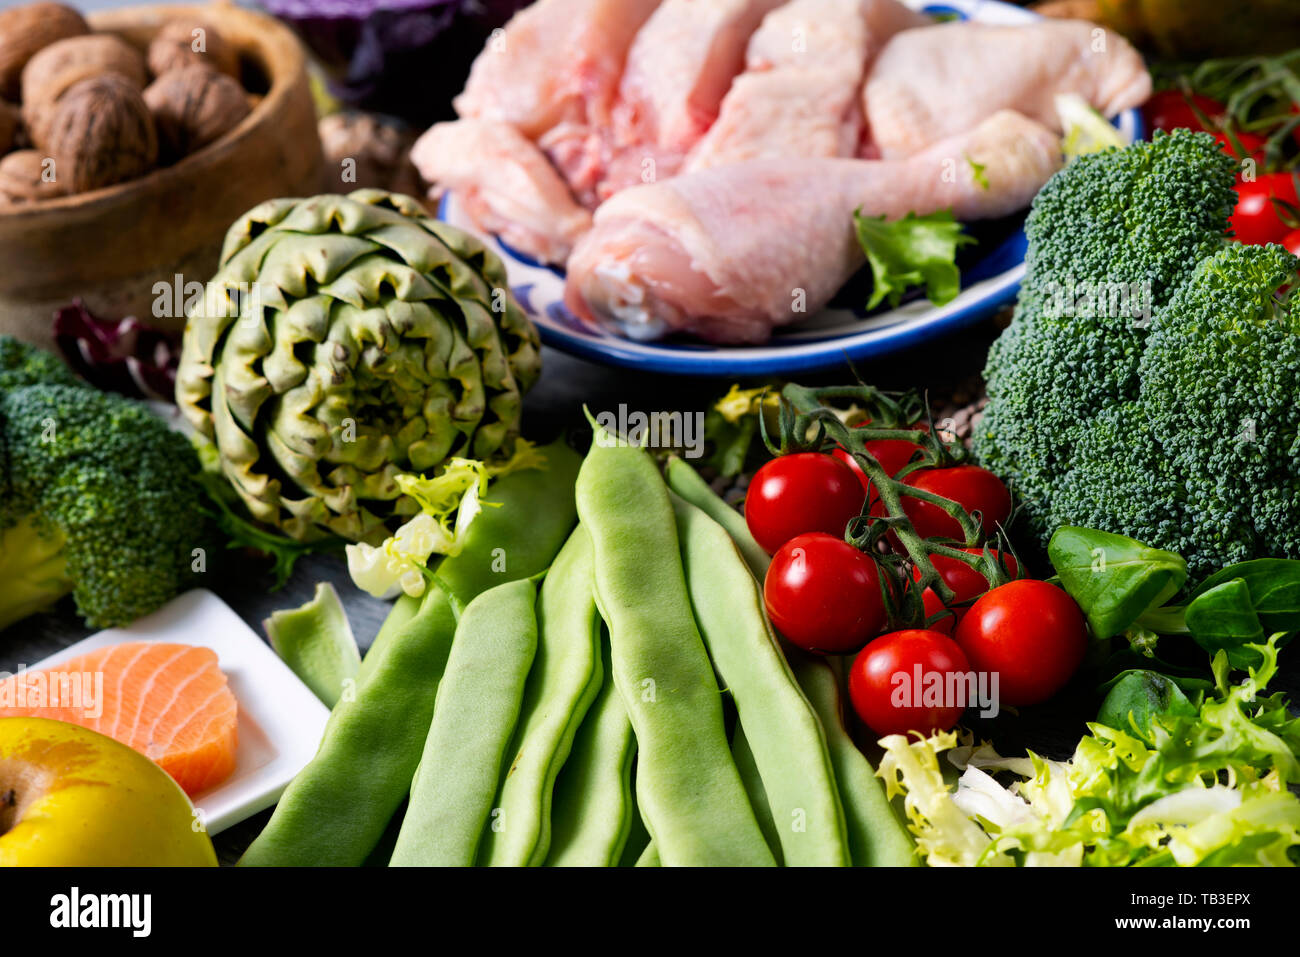 Nahaufnahme von einem Stapel von unverarbeiteten Nahrungsmitteln, wie z. B. verschiedene rohe Früchte und Gemüse, Hülsenfrüchte und Nüsse, einige Stücke von Huhn und Fisch, auf einem Tisch Stockfoto